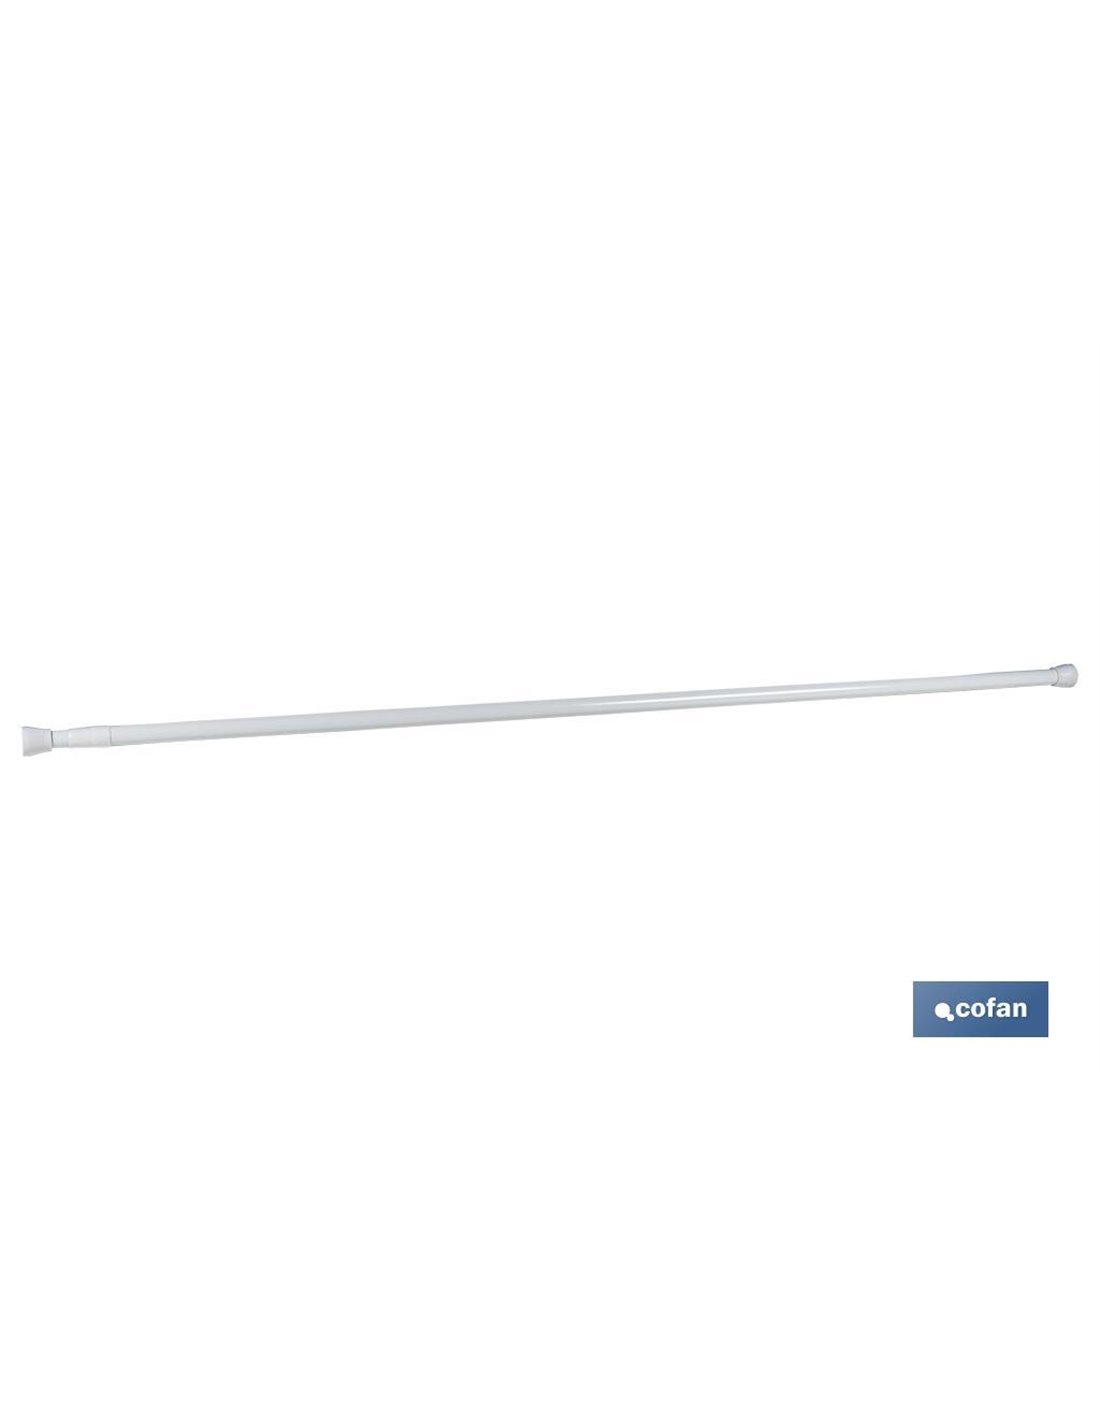 Bastone per tende estensibile (a pressione) modello bianco 61-91 cm